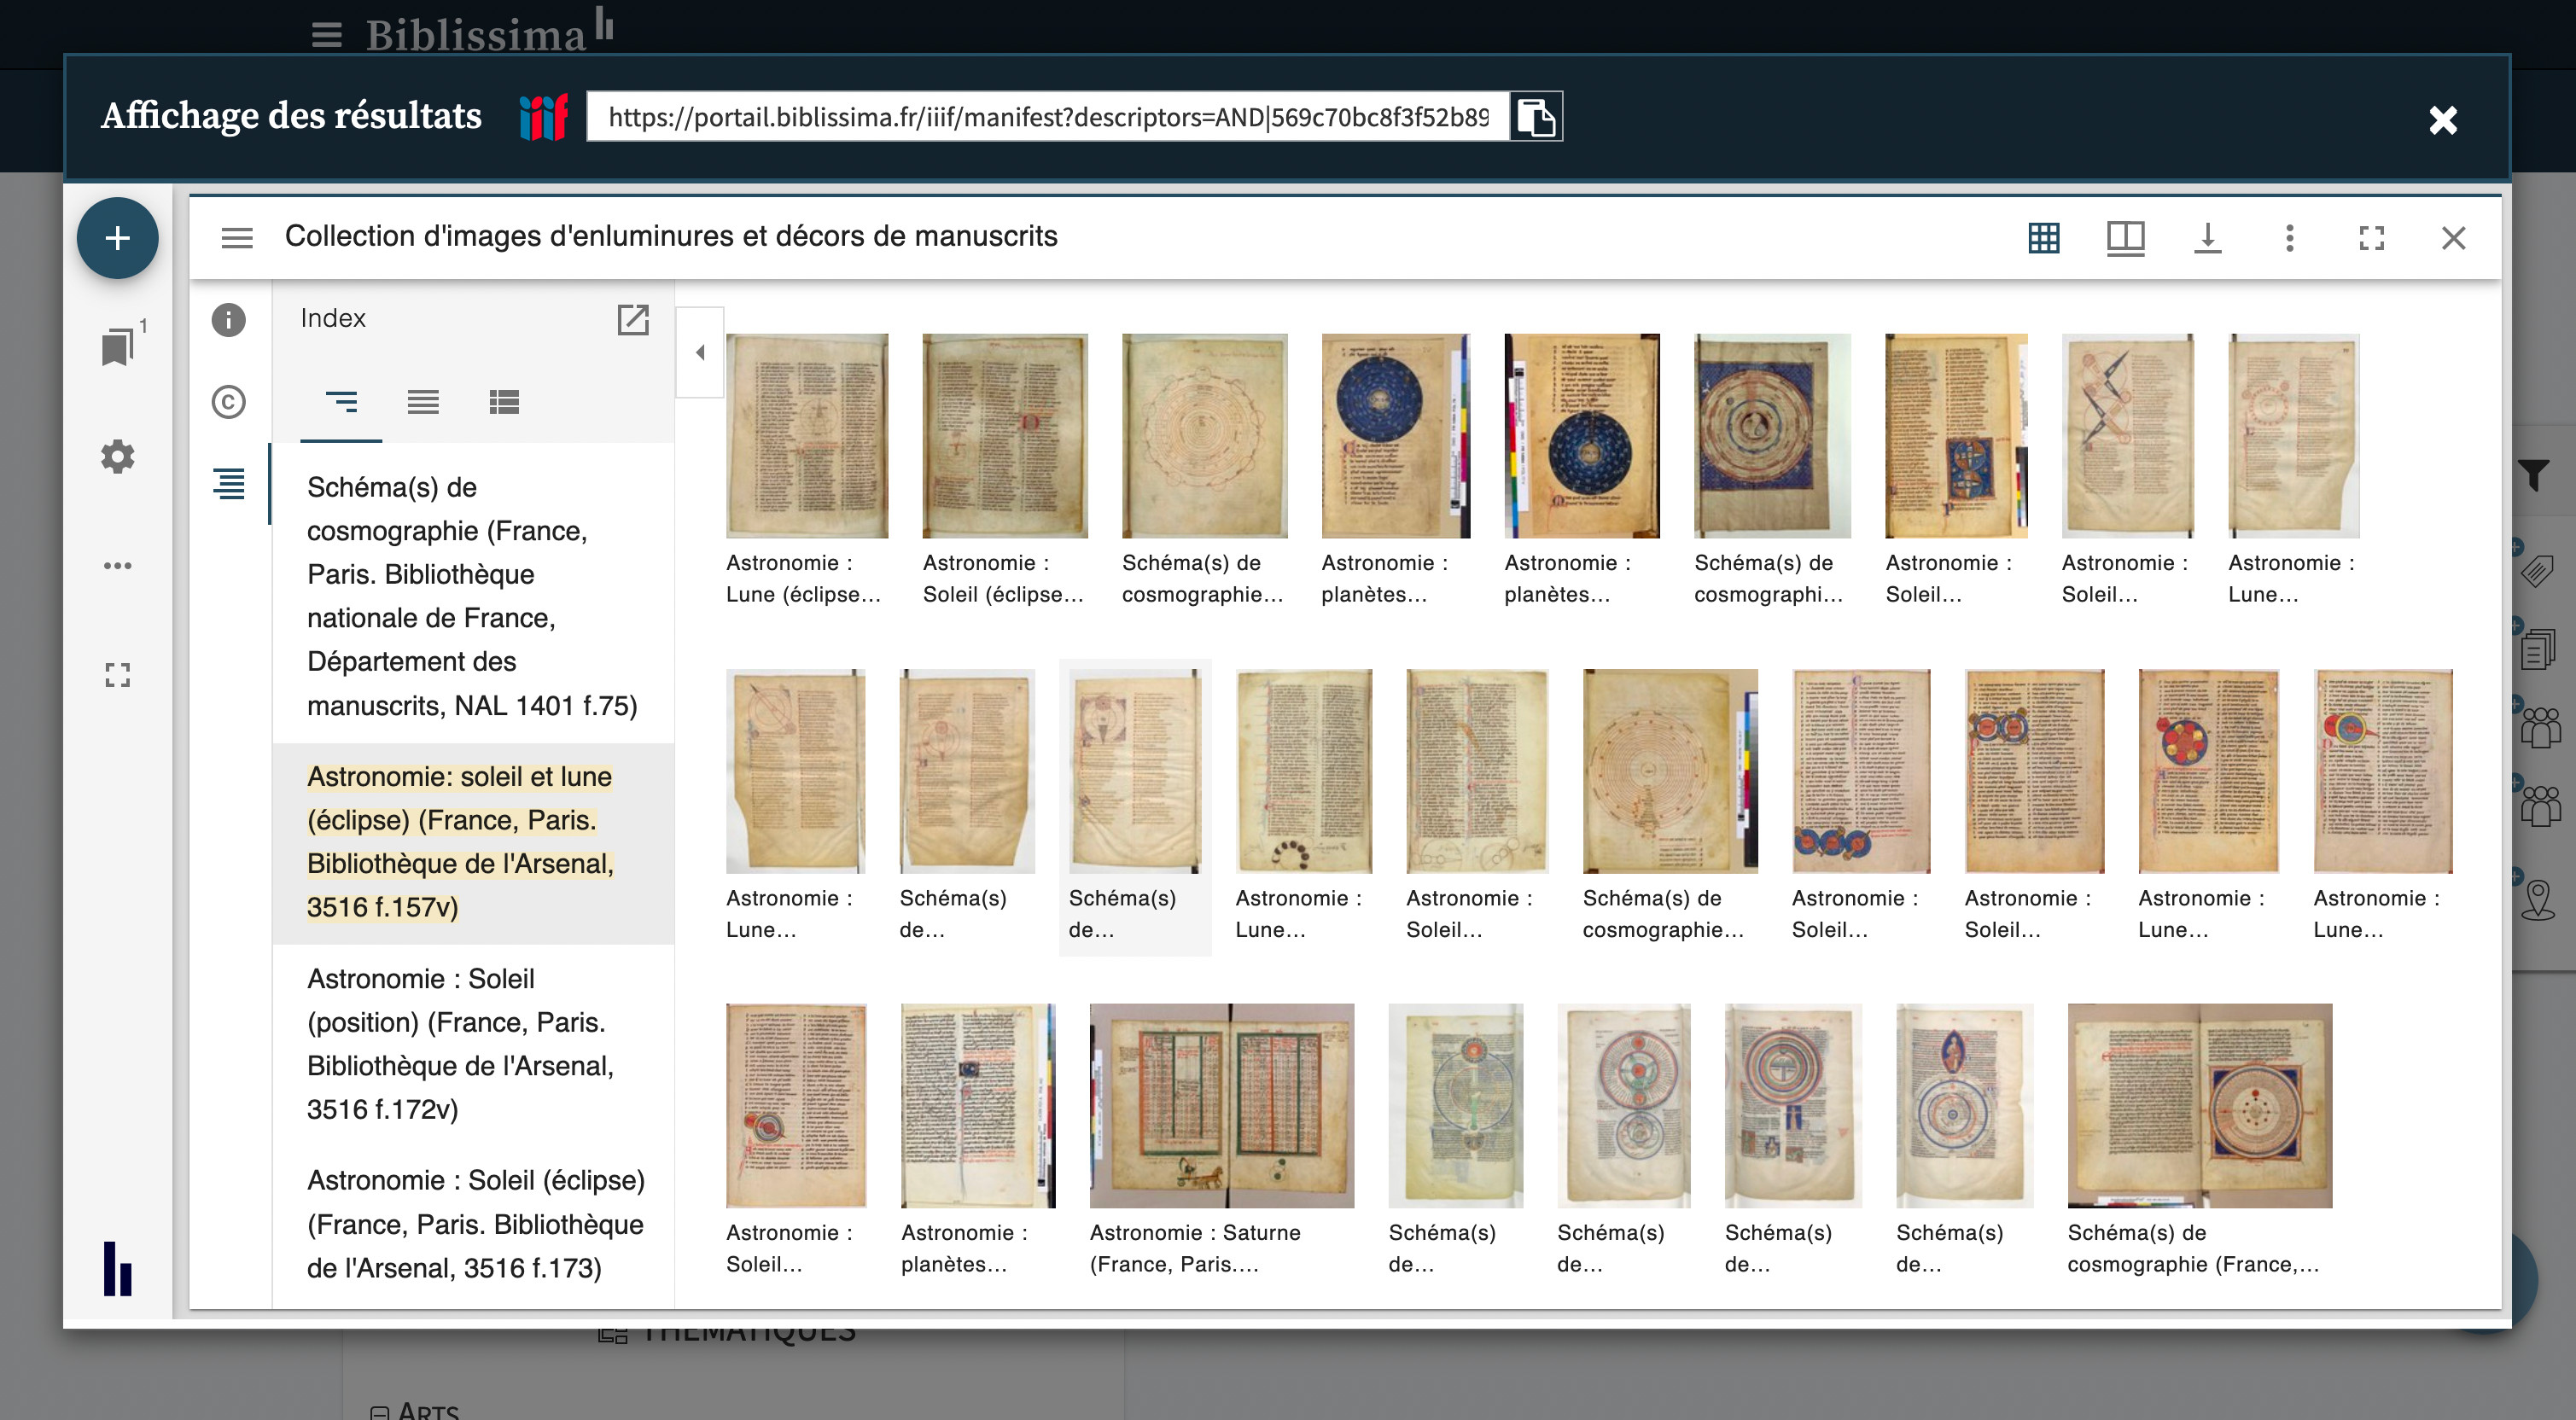 Mirador dans l'interface de recherche iconographique du portail Biblissima